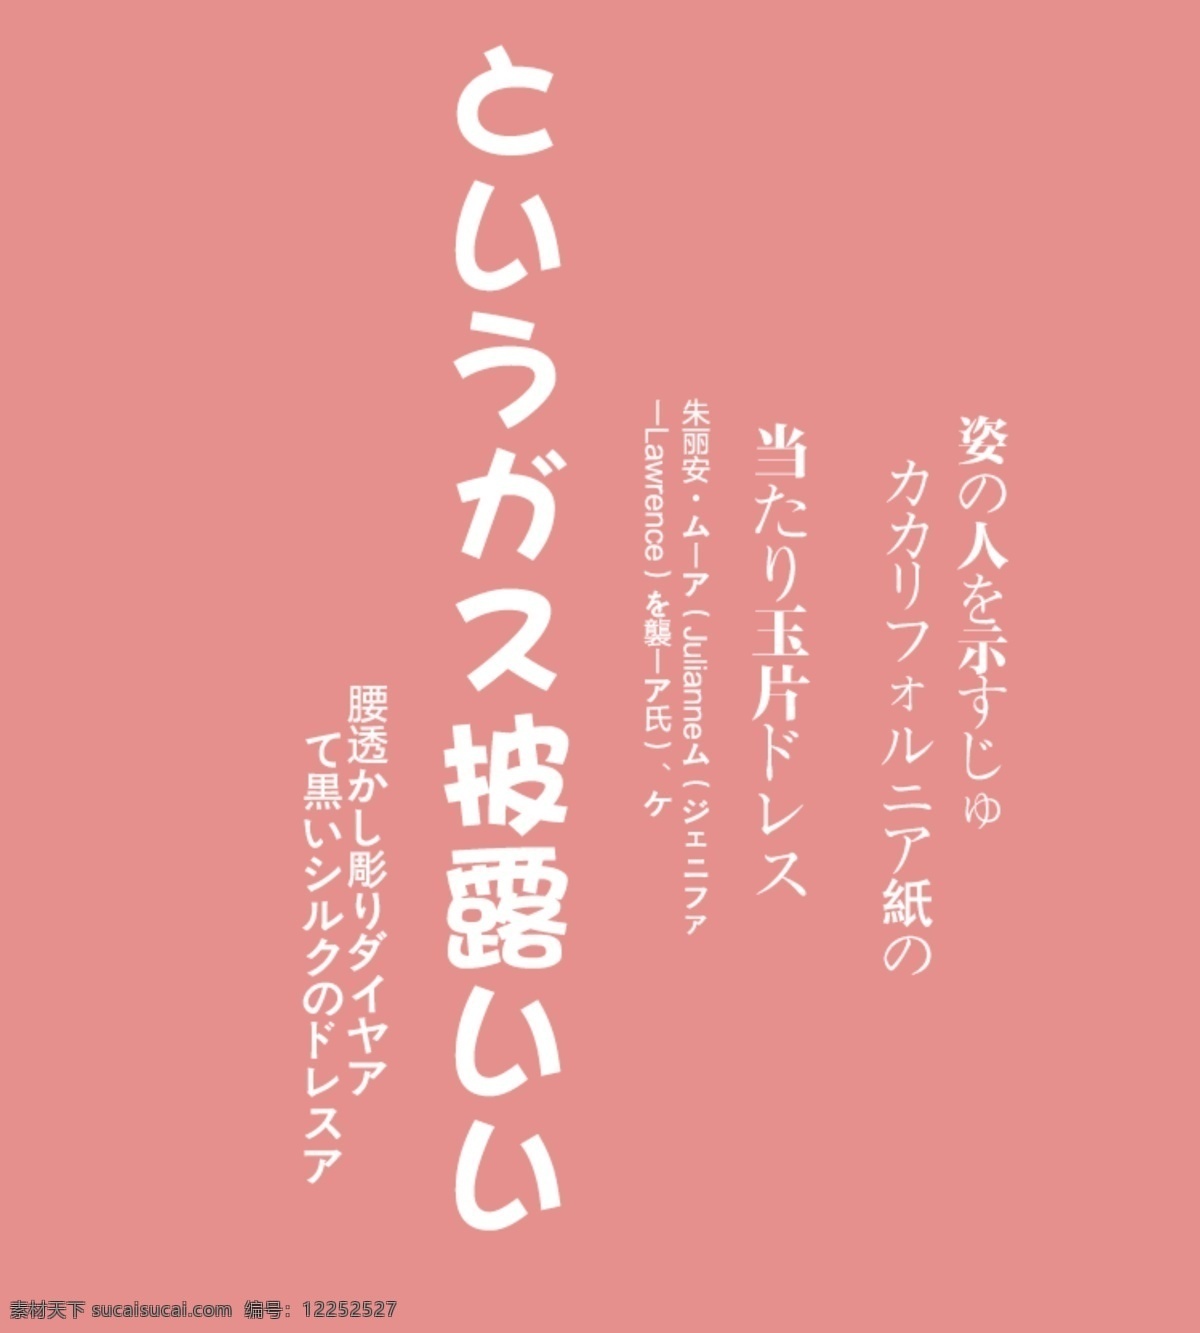 日文排版 排版样式 日文 文字排版 psd素材 排版设计 日系字体排版 封面排版 日式排版 日系排版 字体排版 粉色